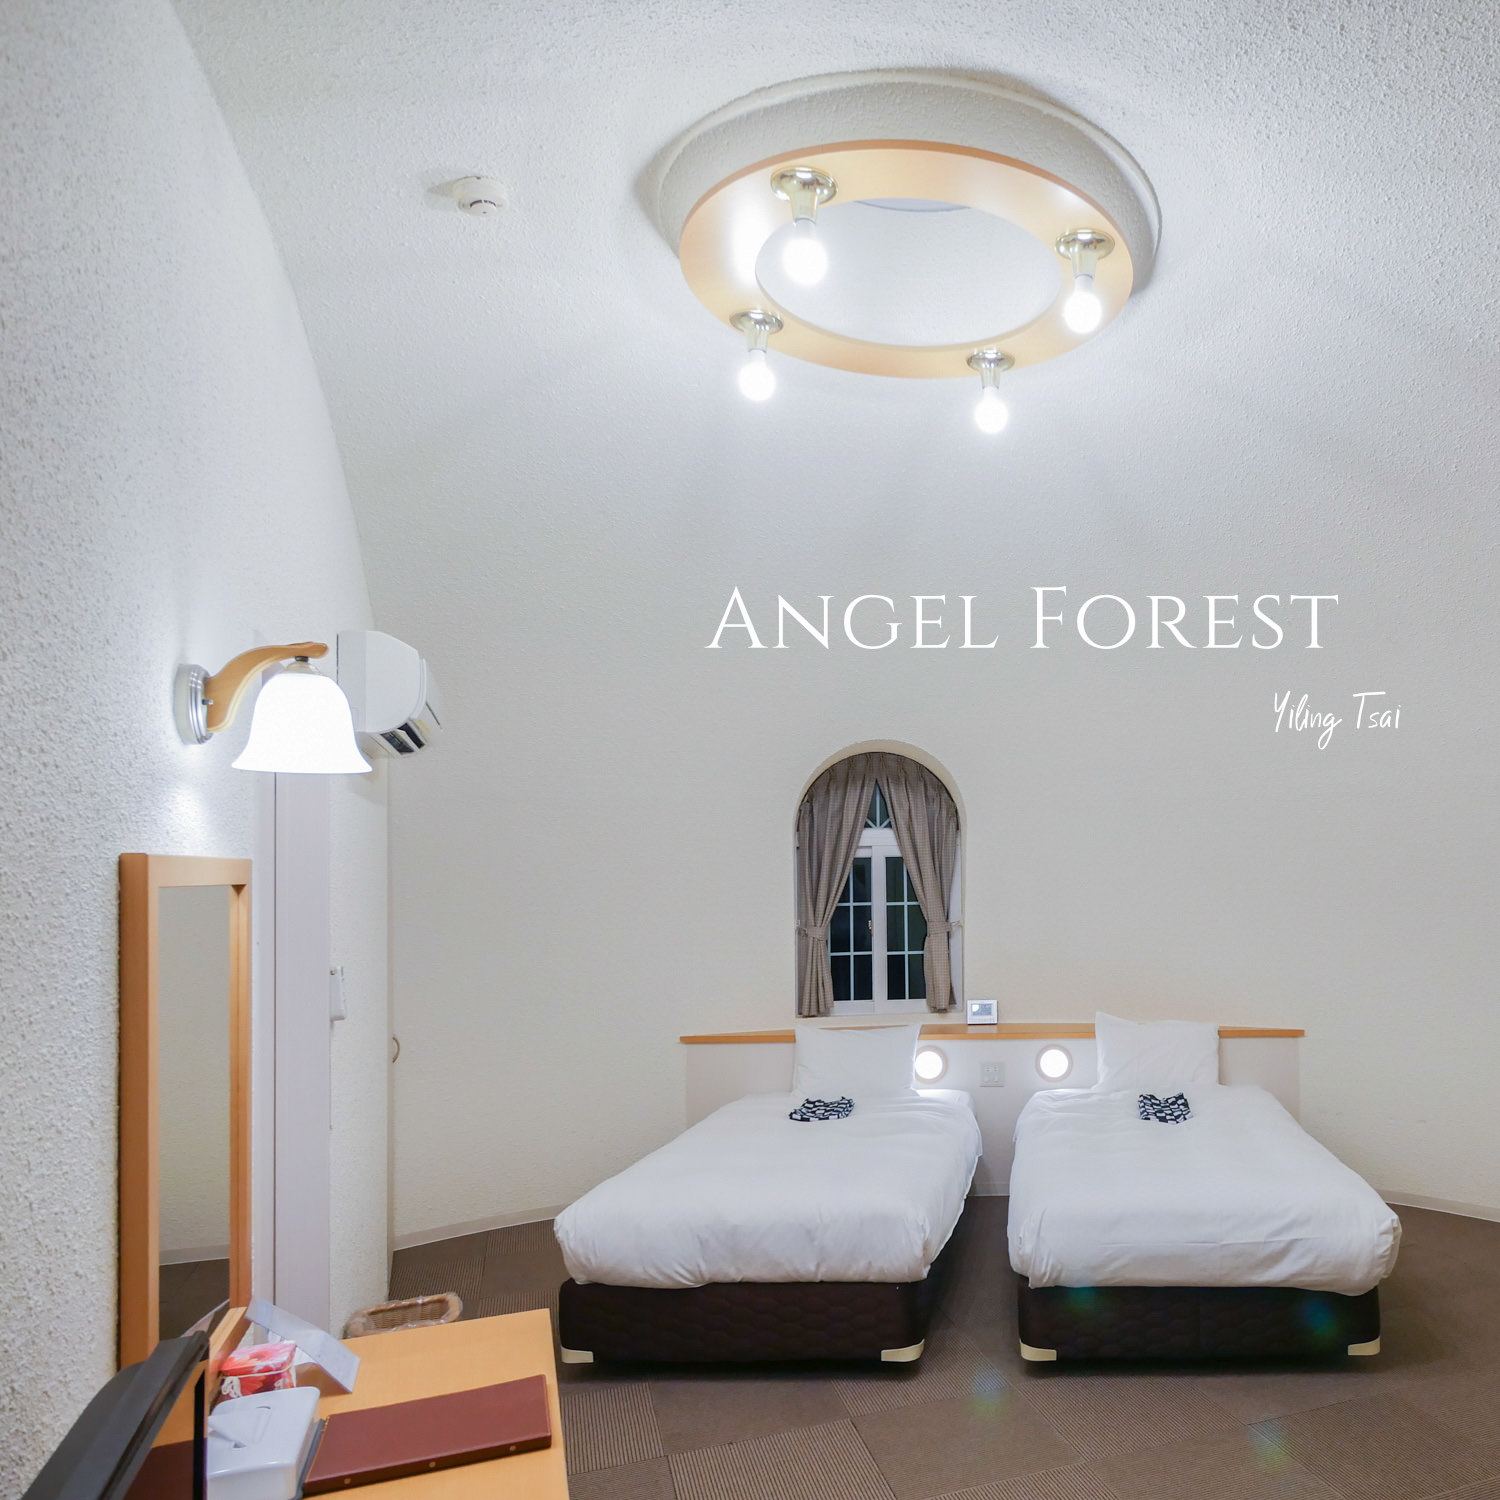 日本福島飯店 Angel Forest  天使之森那須白河 寵物友善住宿